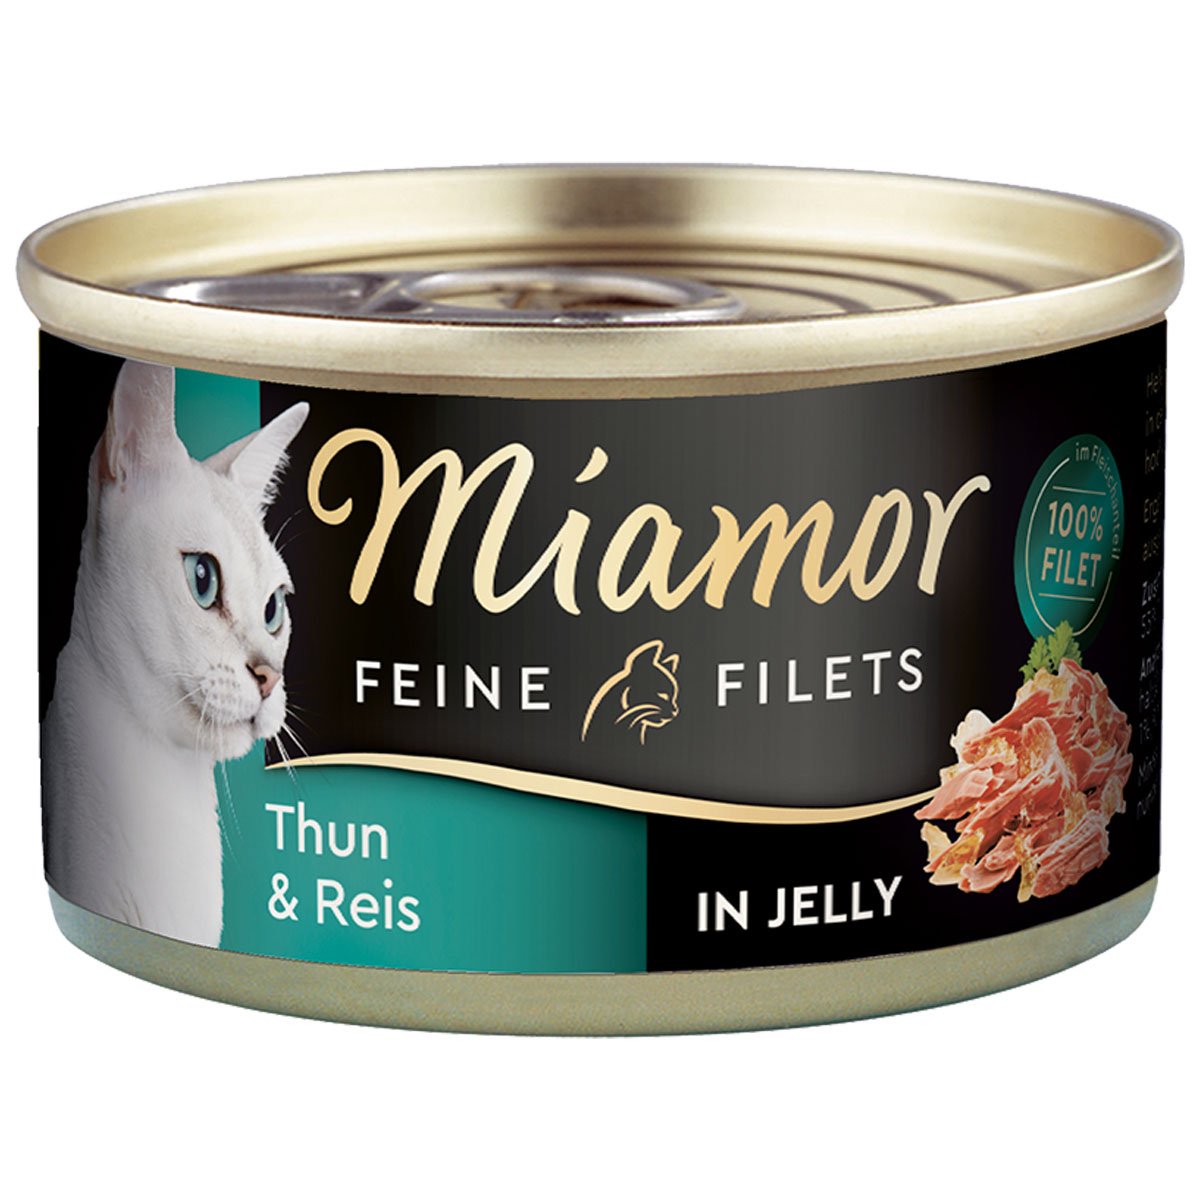 Miamor Katzenfutter Feine Filets in Jelly Thunfisch und Reis 48x100g von Miamor